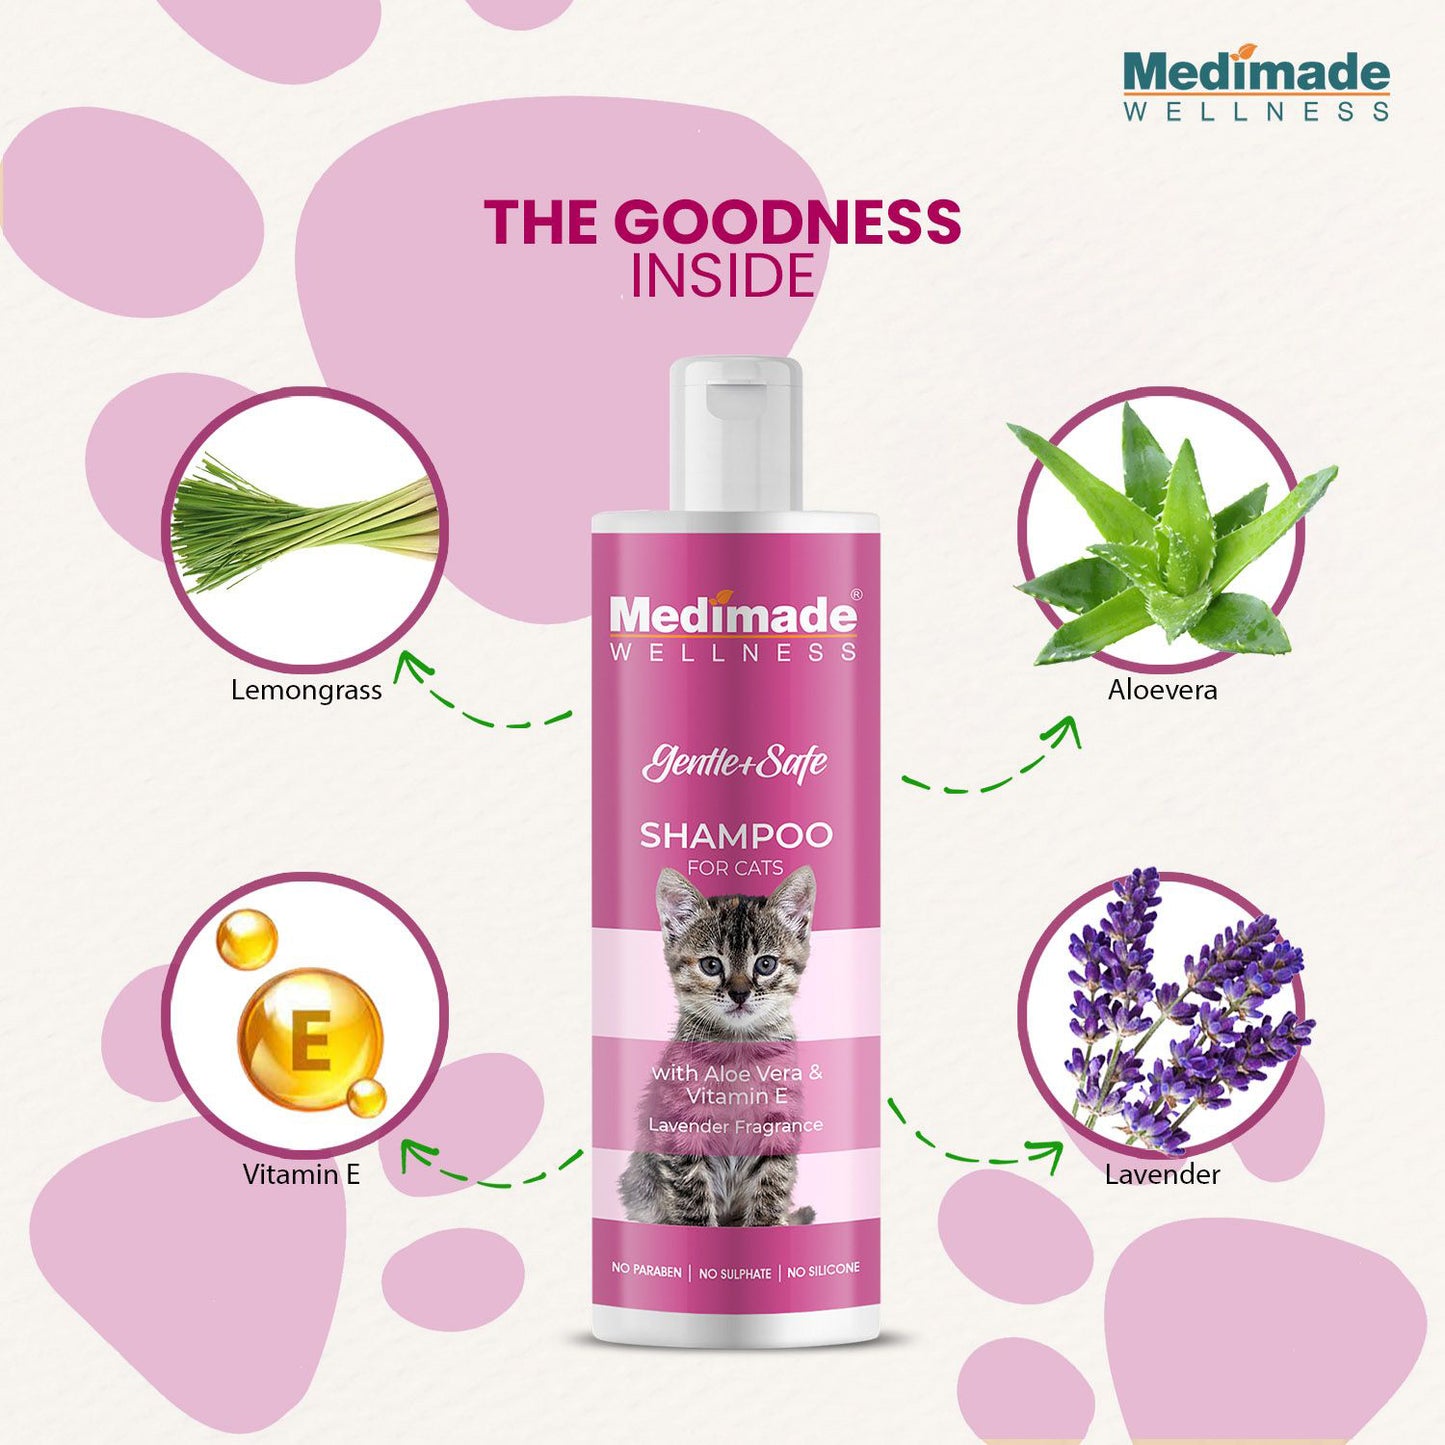 Medimade - Cat Shampoo with Aloe Vera & Vitamin E For Cats